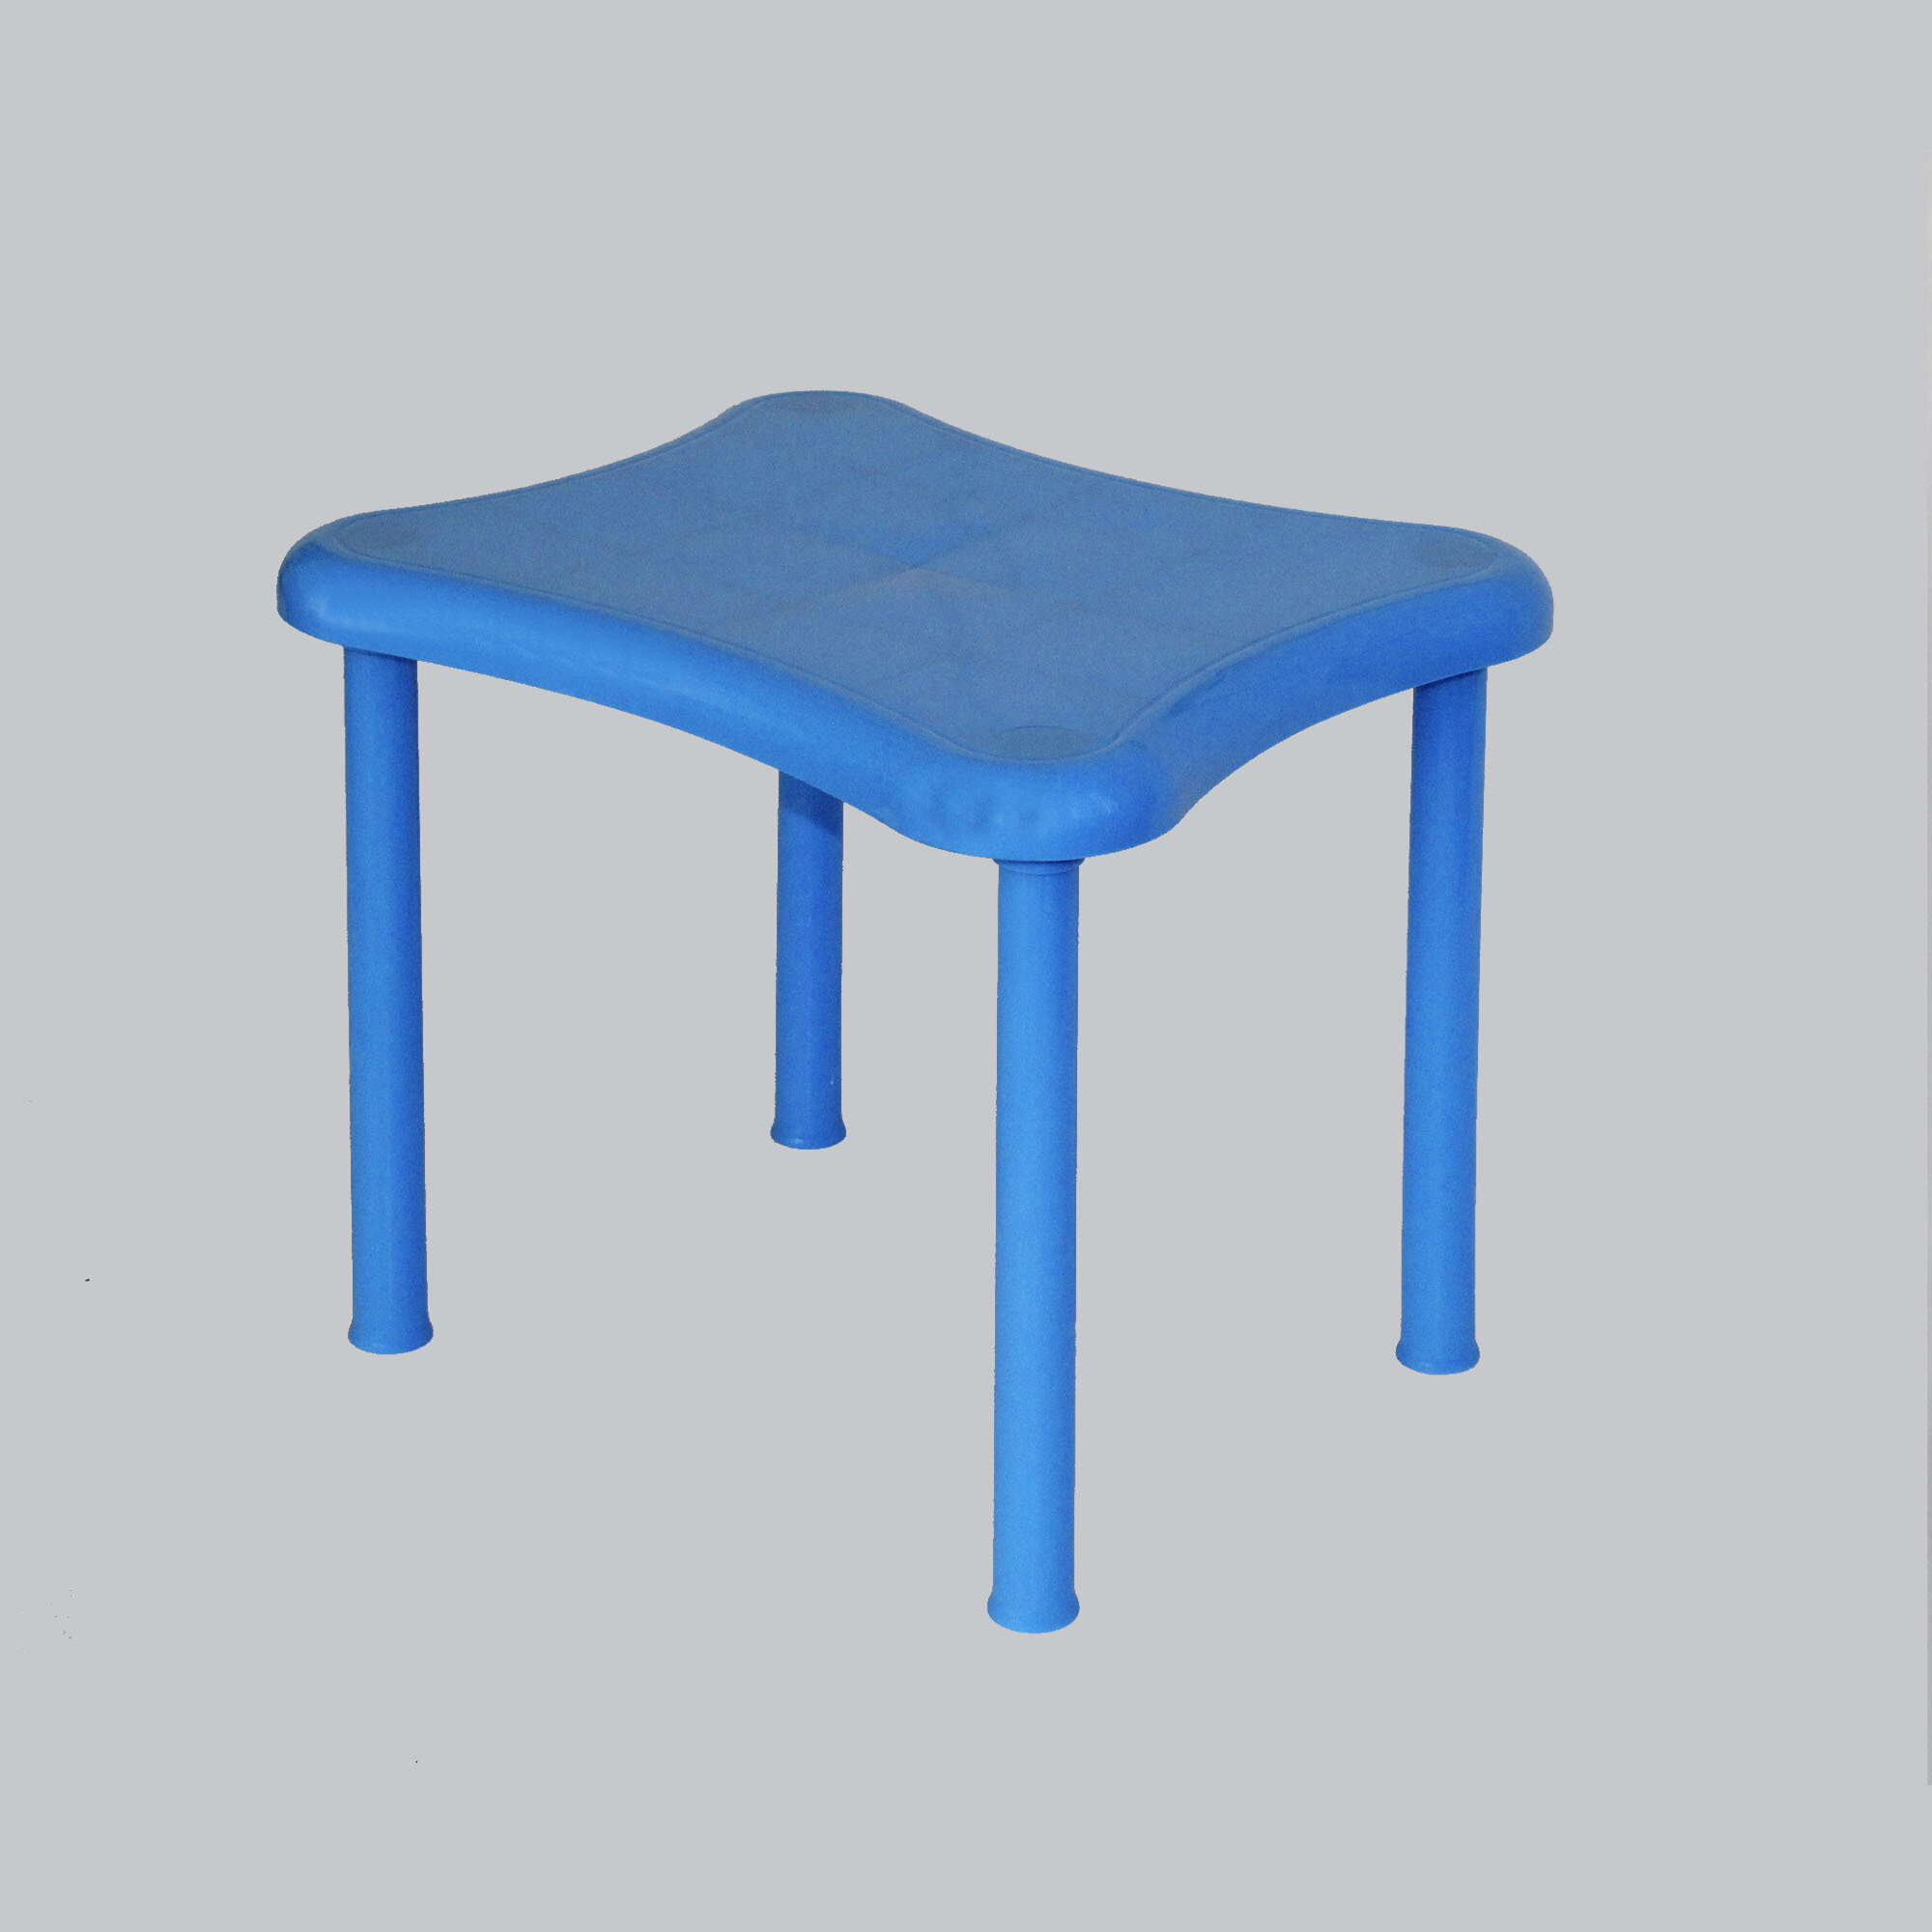 Стол садовый прямоугольный Капитоша складной 59.5x50.5x49.5 см полипропилен голубой